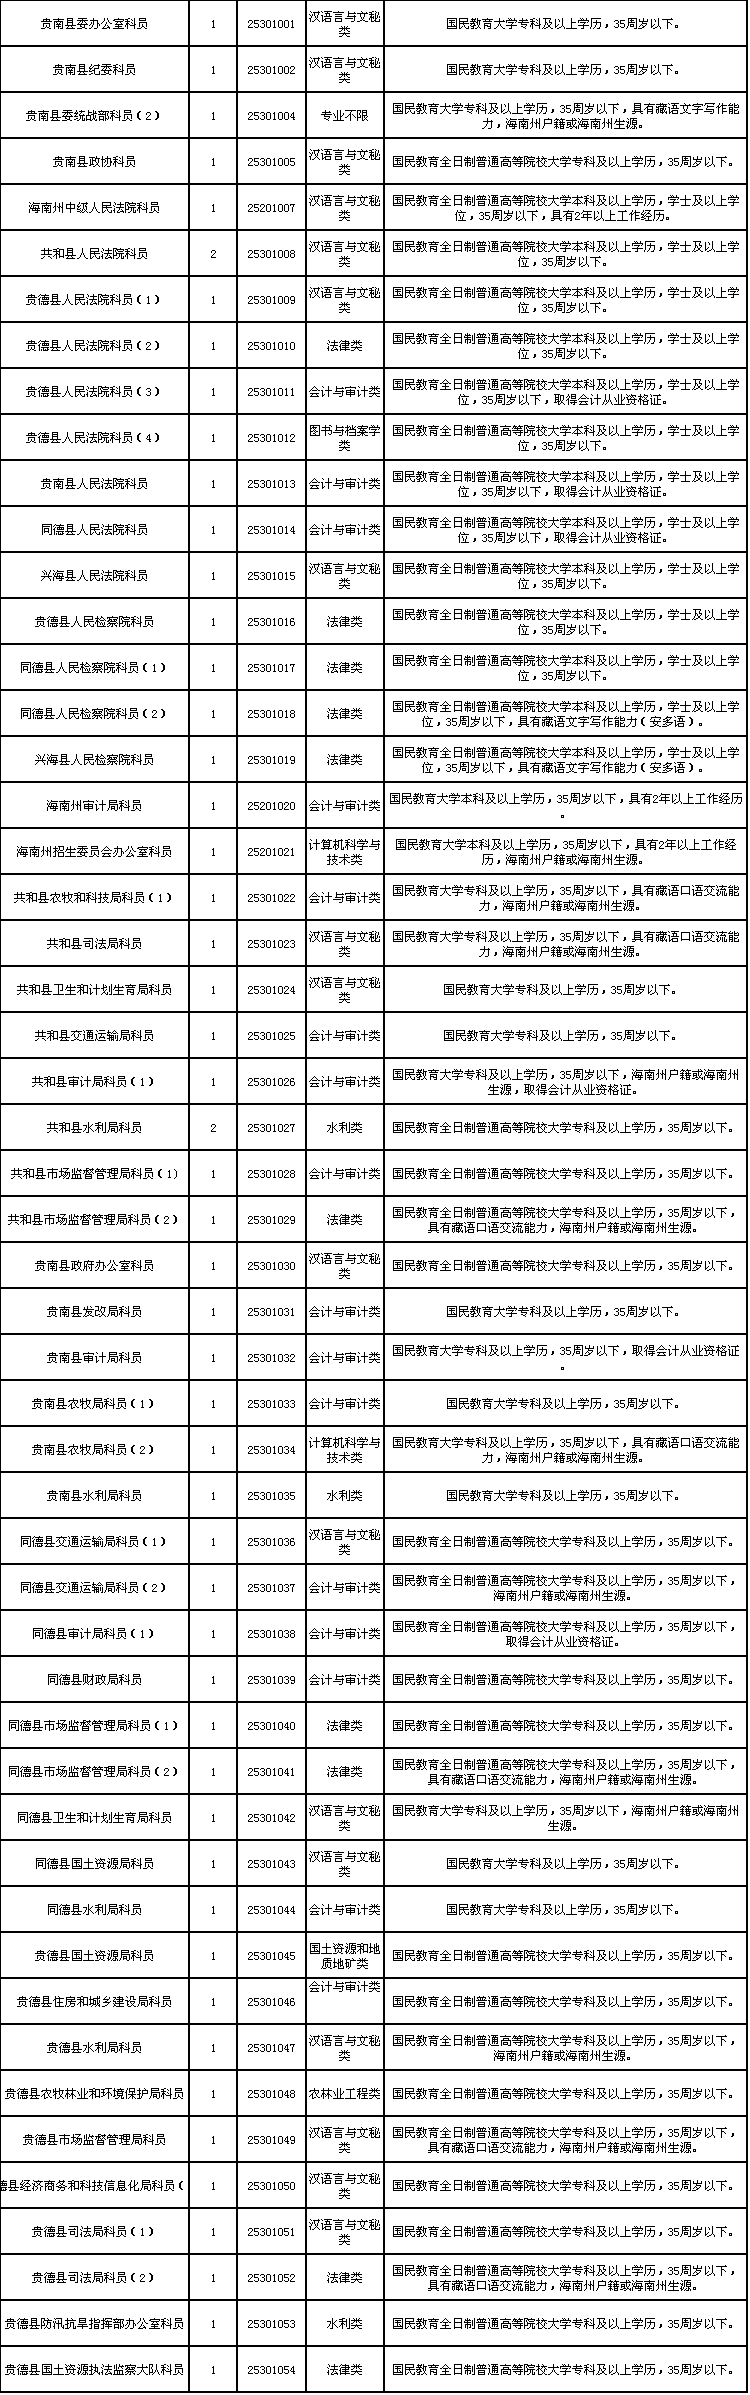 2017年青海省公务员考试职位表:海南54人